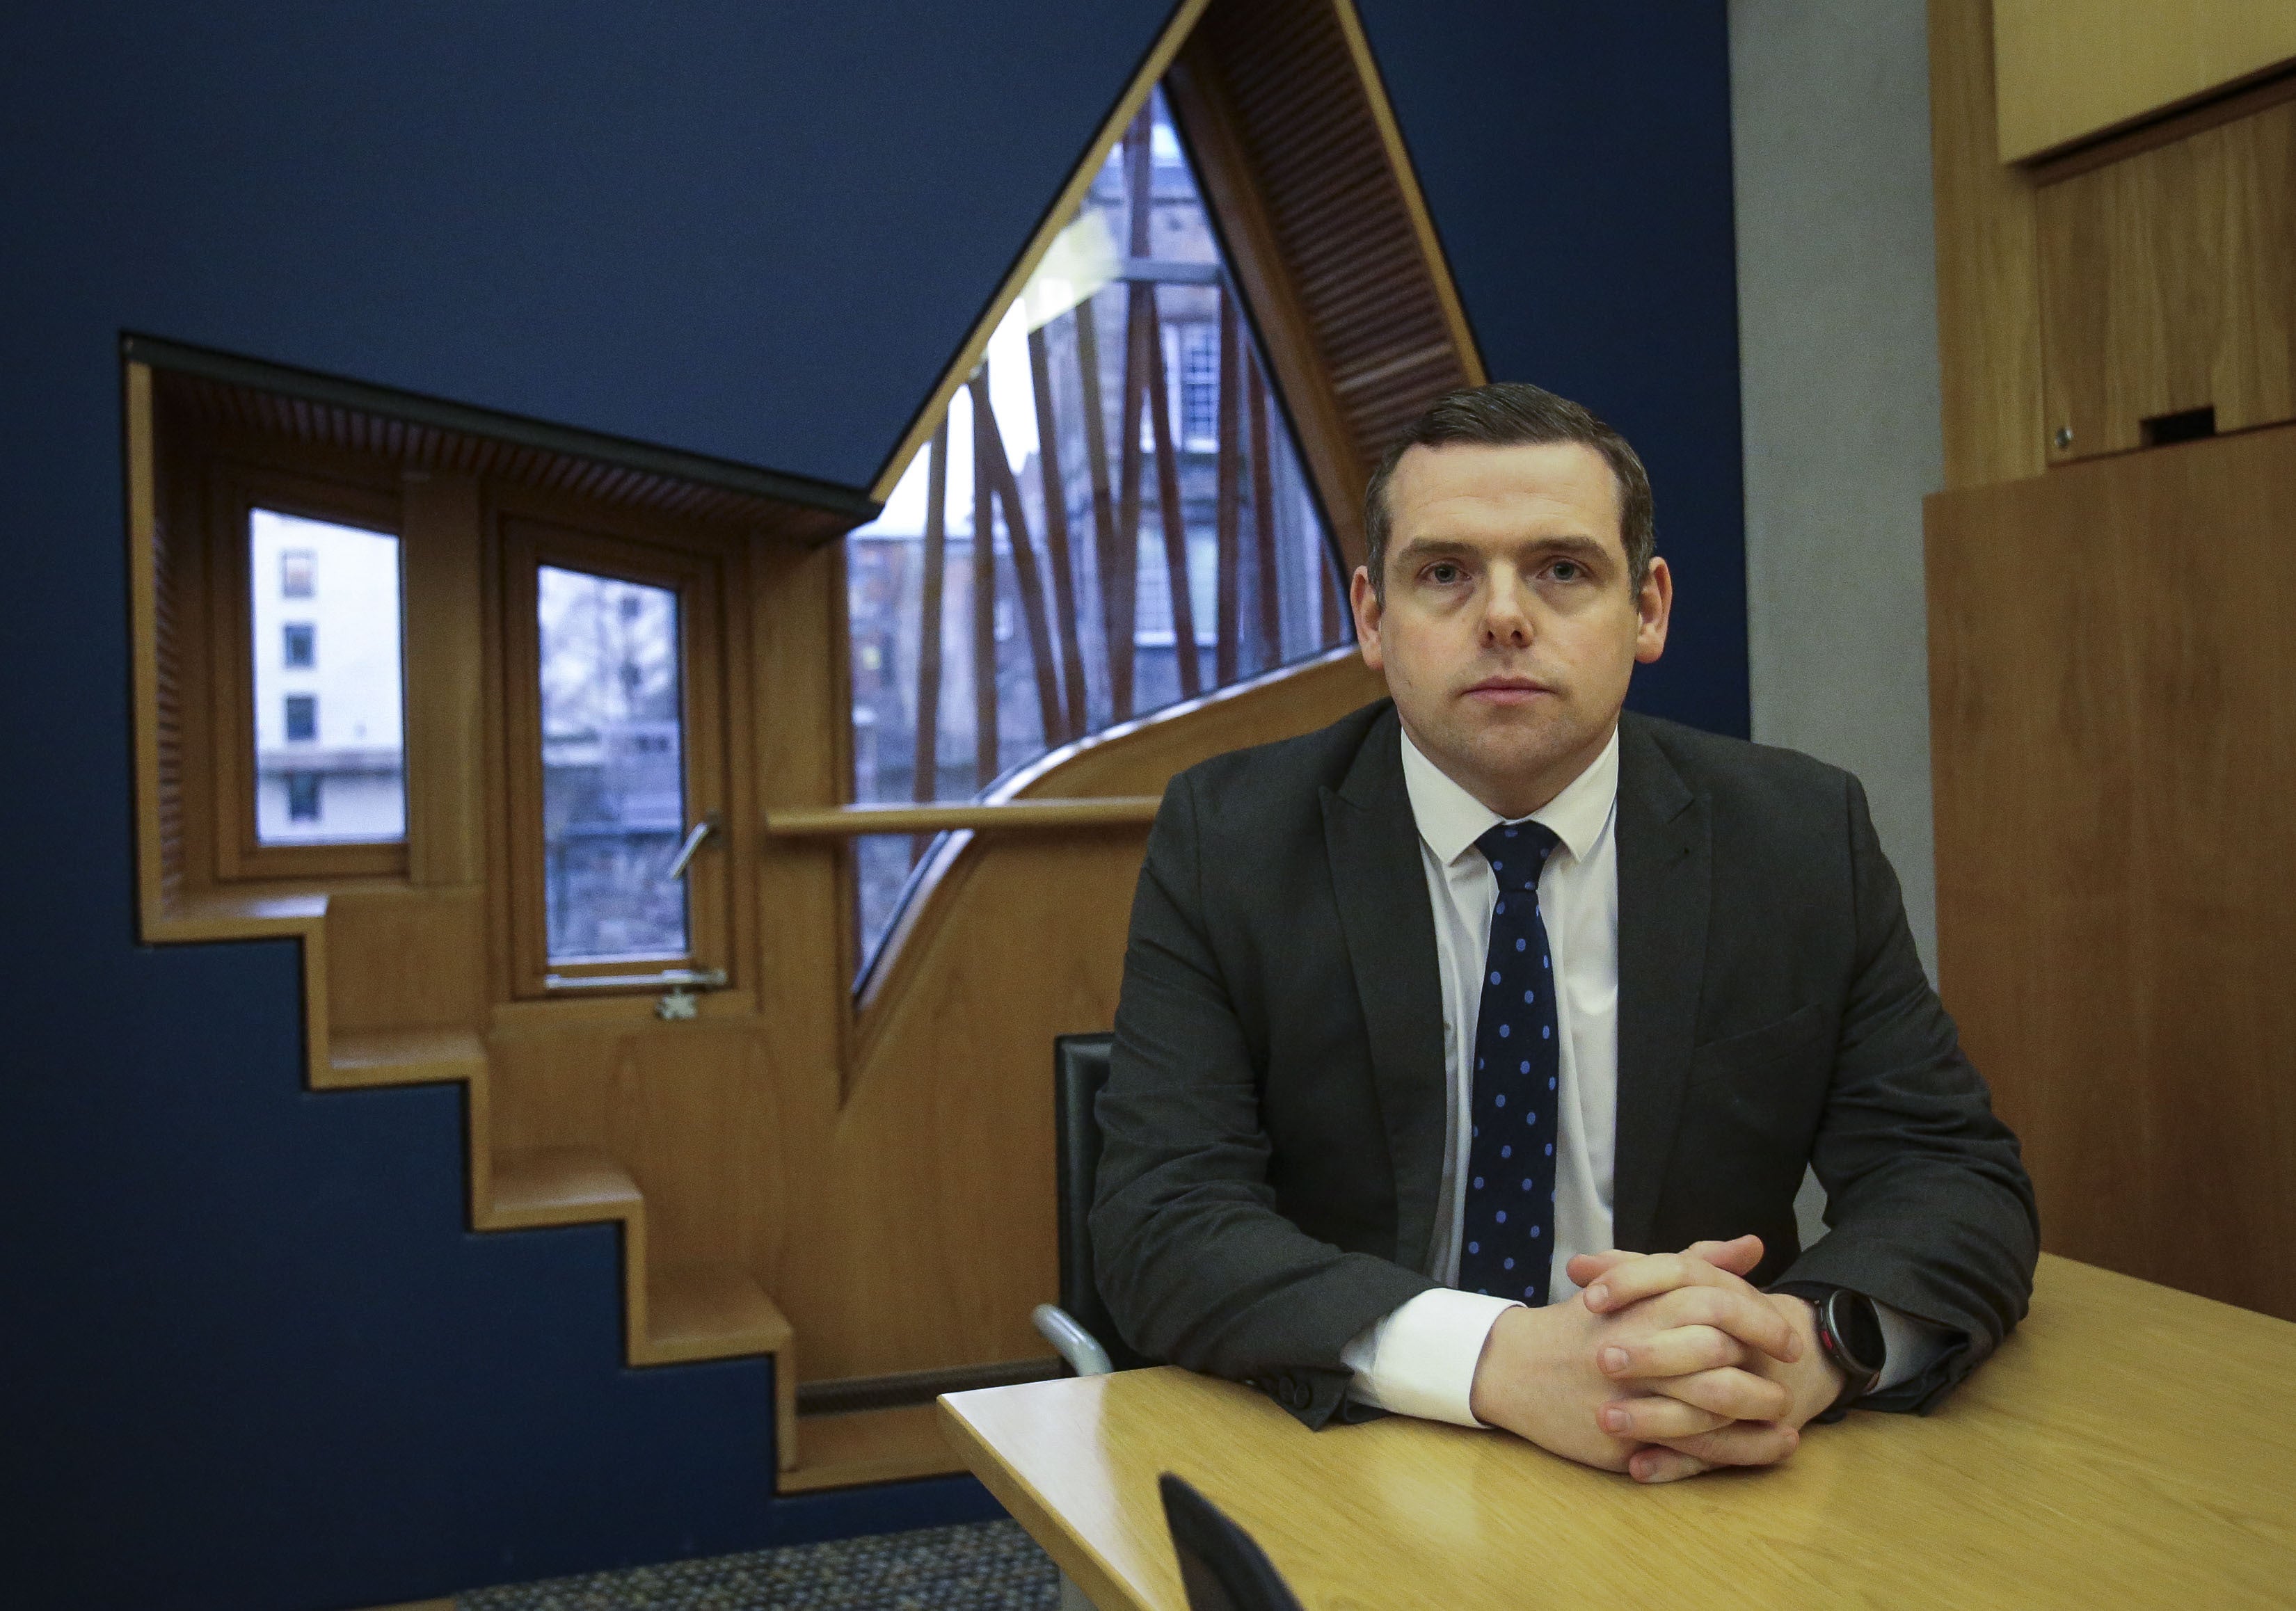 Scottish Conservative leader Douglas Ross in the Scottish Parliament (Fraser Bremner/PA)